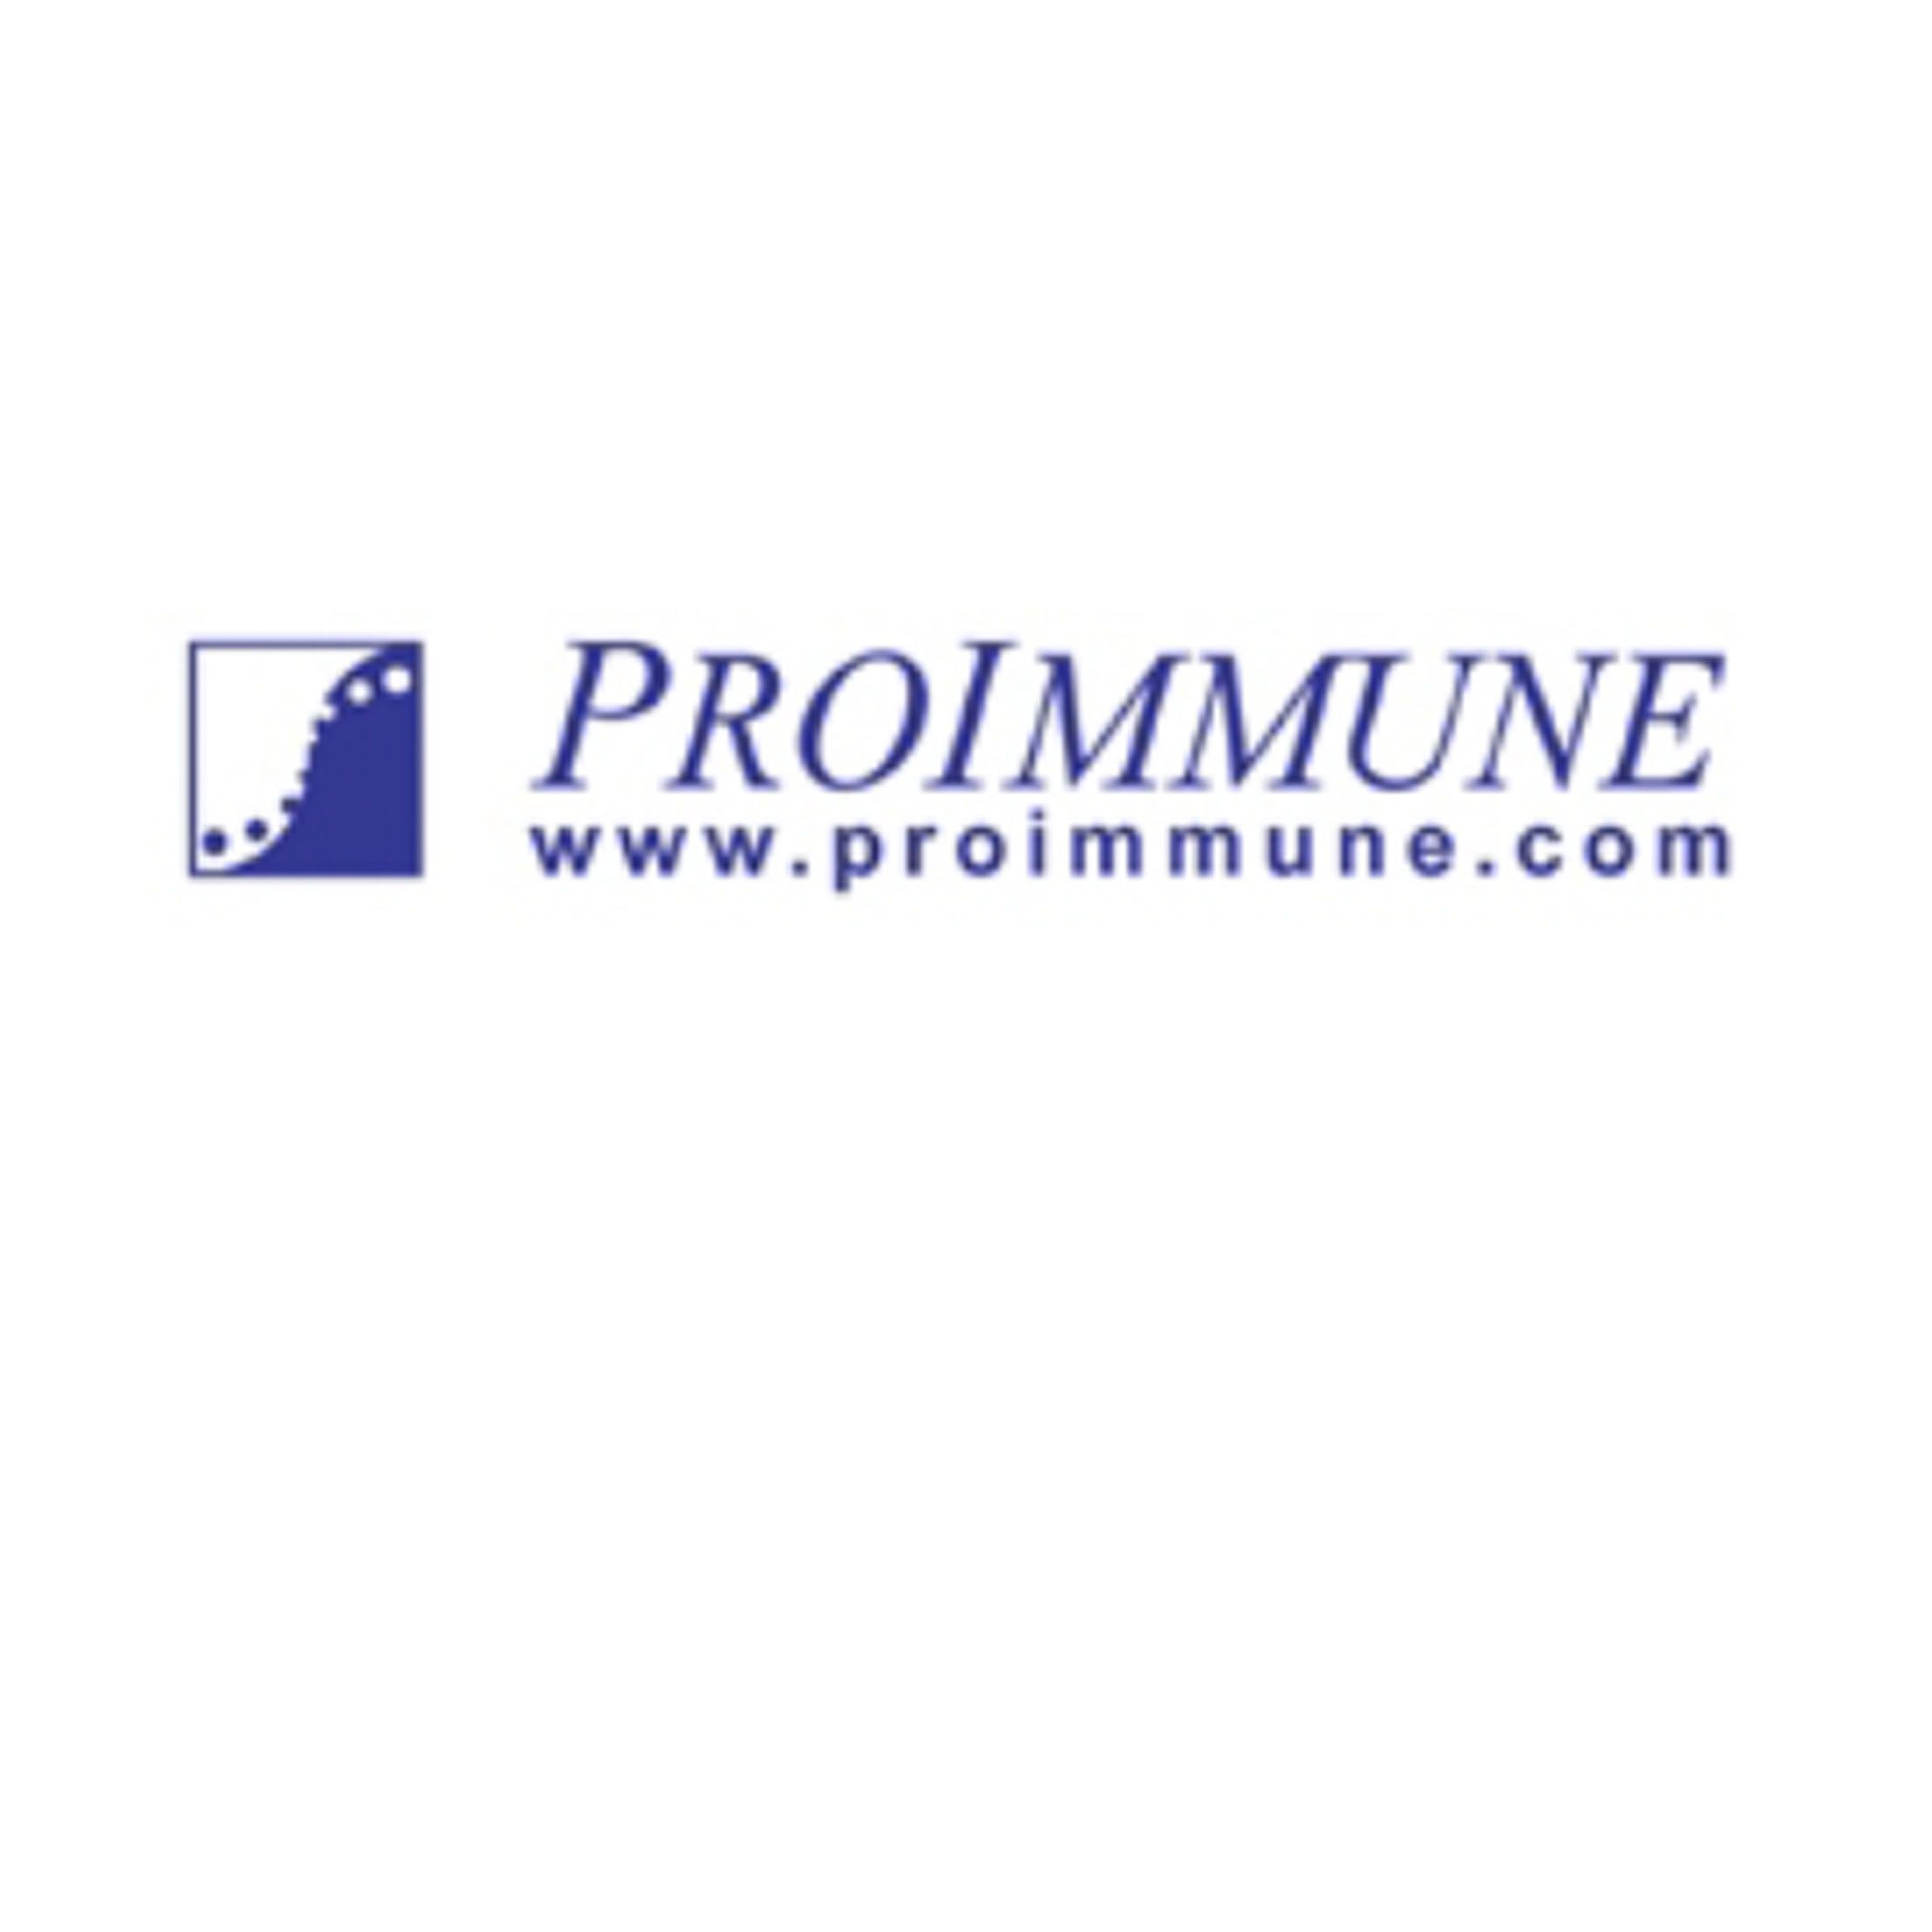 ProImmune荧光标记重组MHC Class I 五聚体和CD1D四聚体,用于特异性的T 细胞免疫功能检测